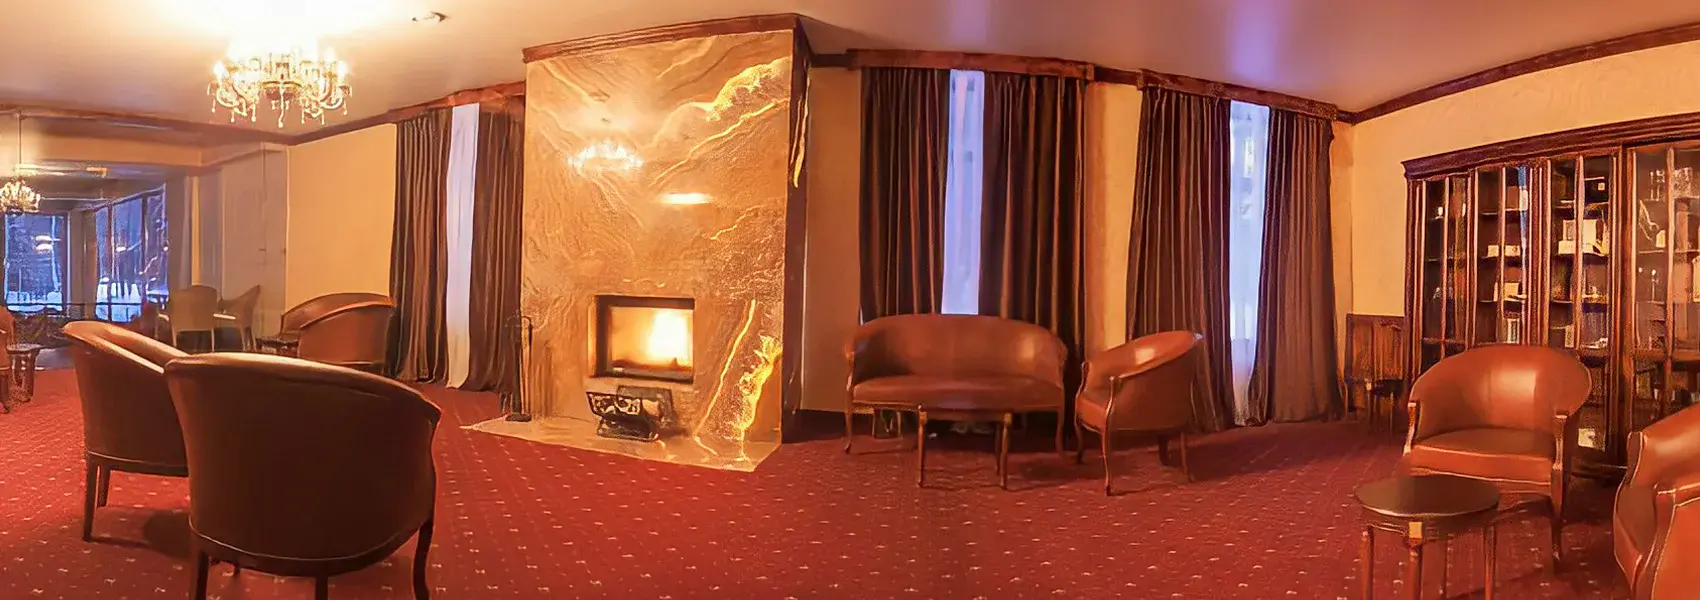 Сигарная комната отель Солнечный Солнечногорск